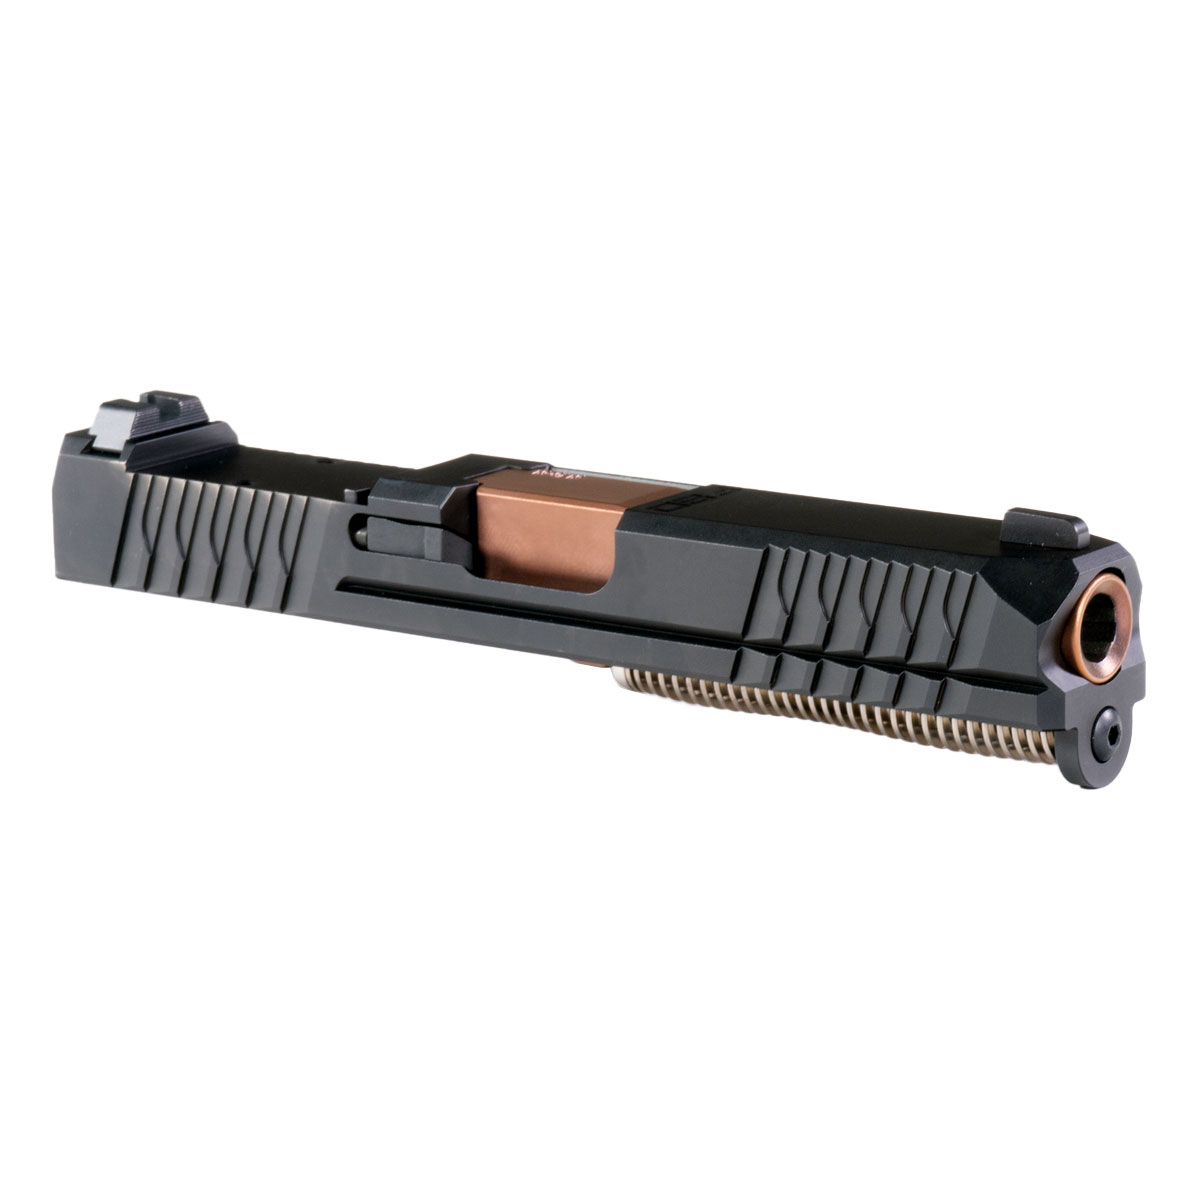 DD 'Velareon' 9mm Complete Slide Kit - Glock 19 Gen 1-3 Compatible